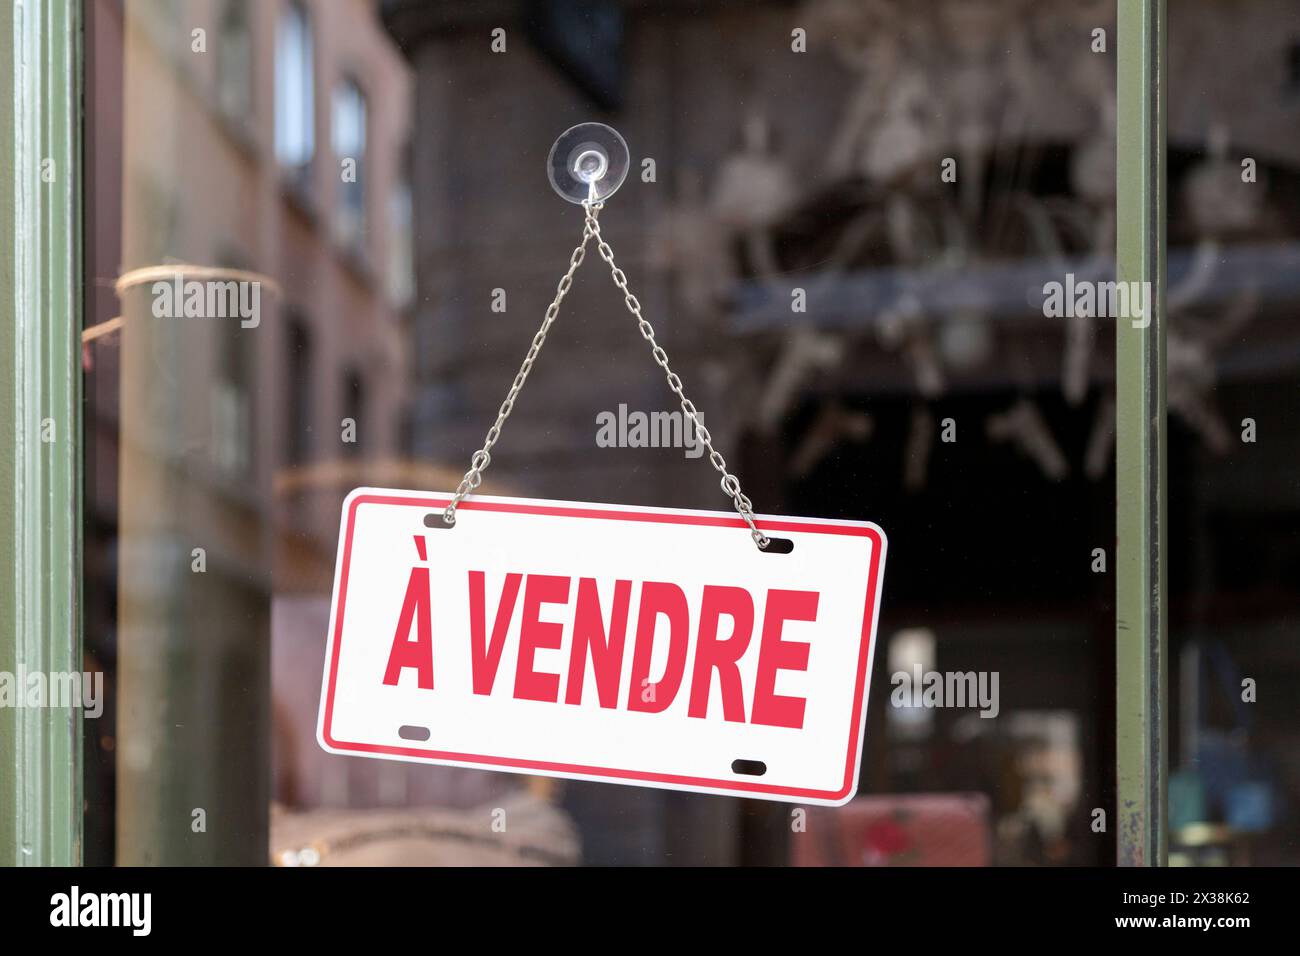 Primo piano su un cartello rosso in una finestra con scritto in francese "à vendre", che in inglese significa "in vendita". Foto Stock